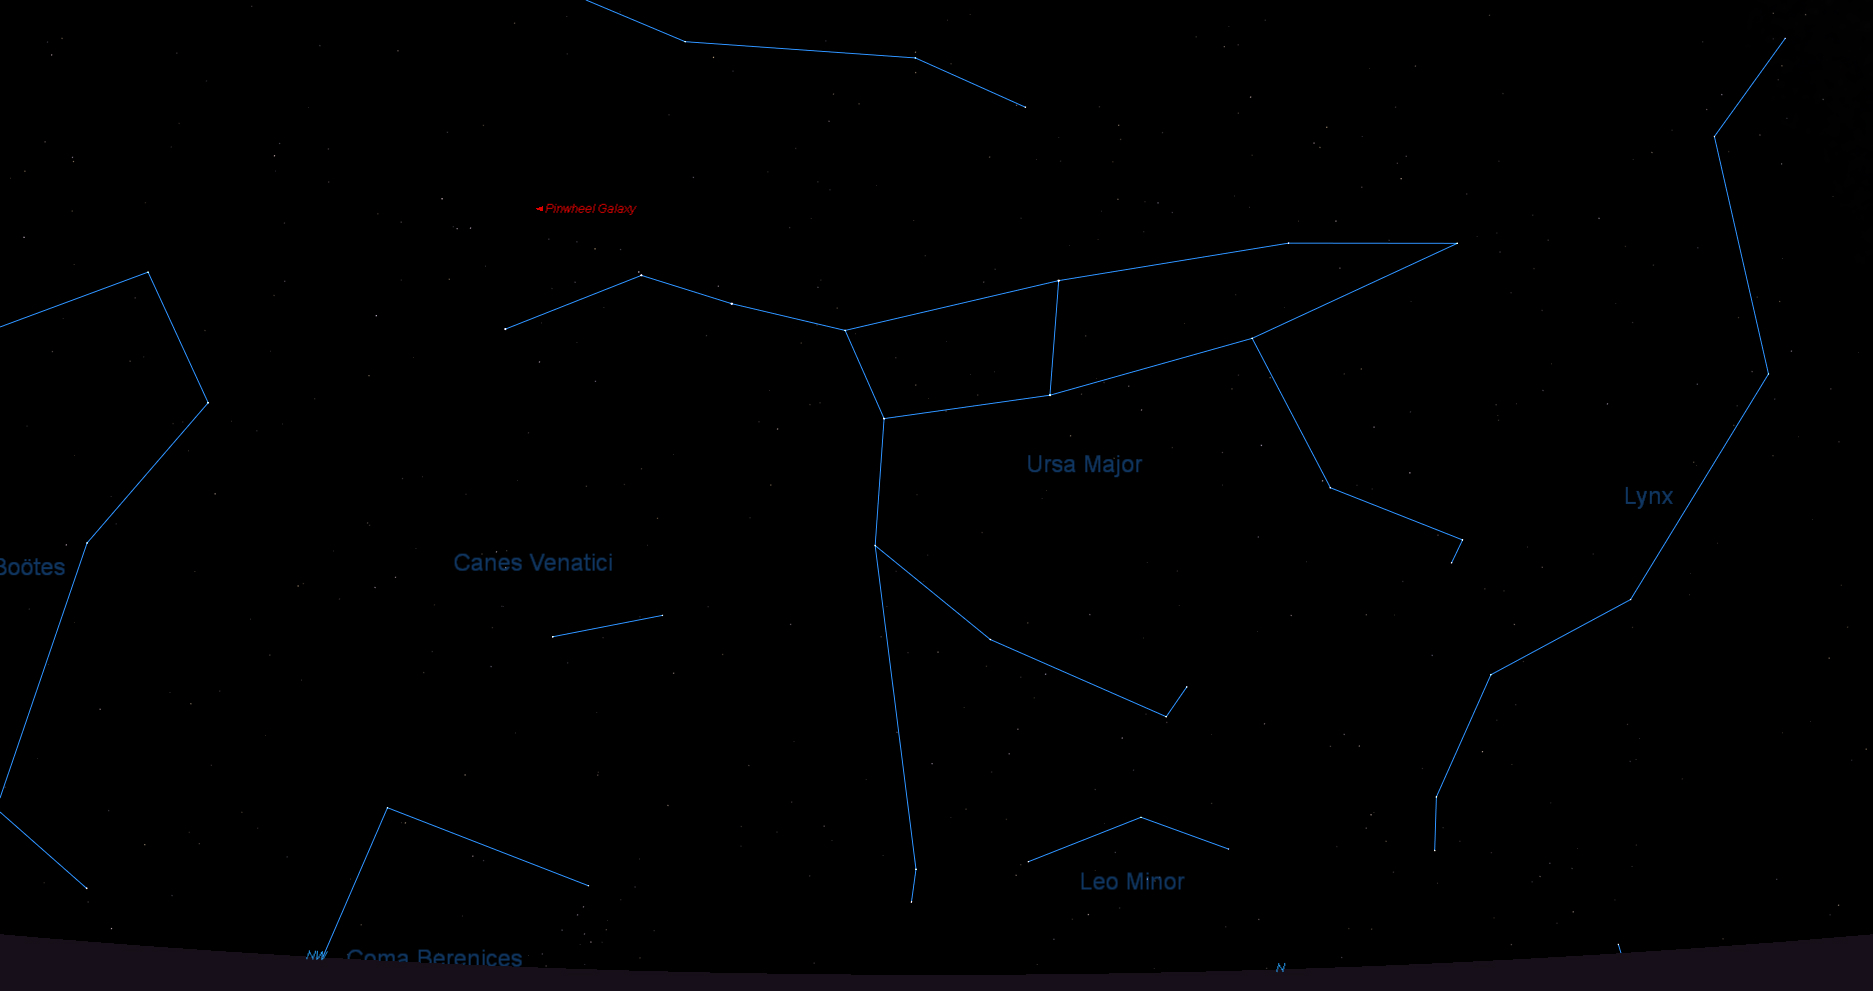 Søkekart for supernova SN2011fe. (Versjon med bedre oppløsning lastes i ovennevnte artikkel på www.astroevents.no) Galakse M101 er markert med “Pinwheel Galaxy” i rødt.  Illustrasjon: Knut Jørgen Røed Ødegaard